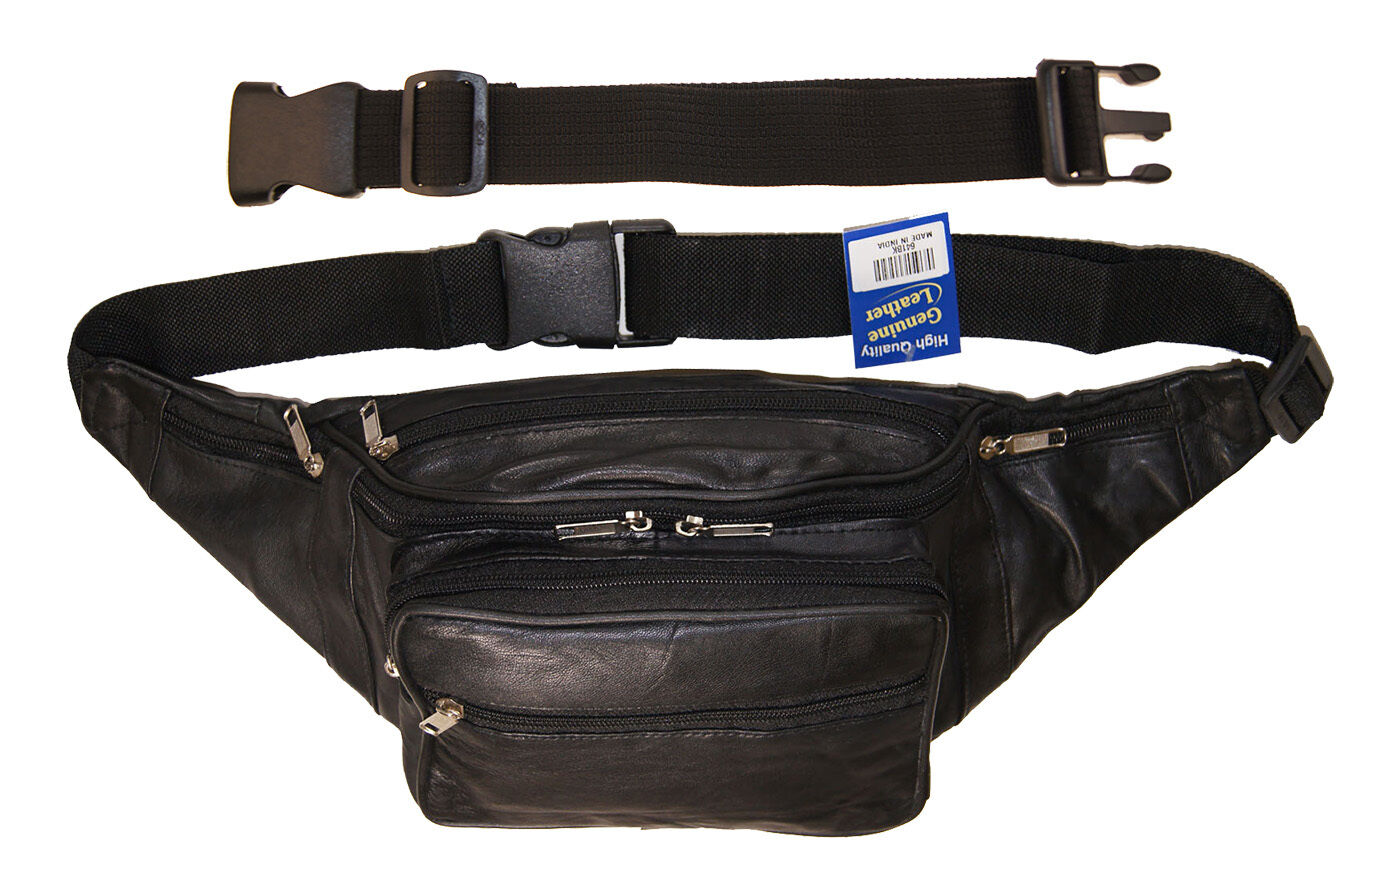 AG Wallets Large Concealed Leather Fanny Pack Bag 18" Extension Belt